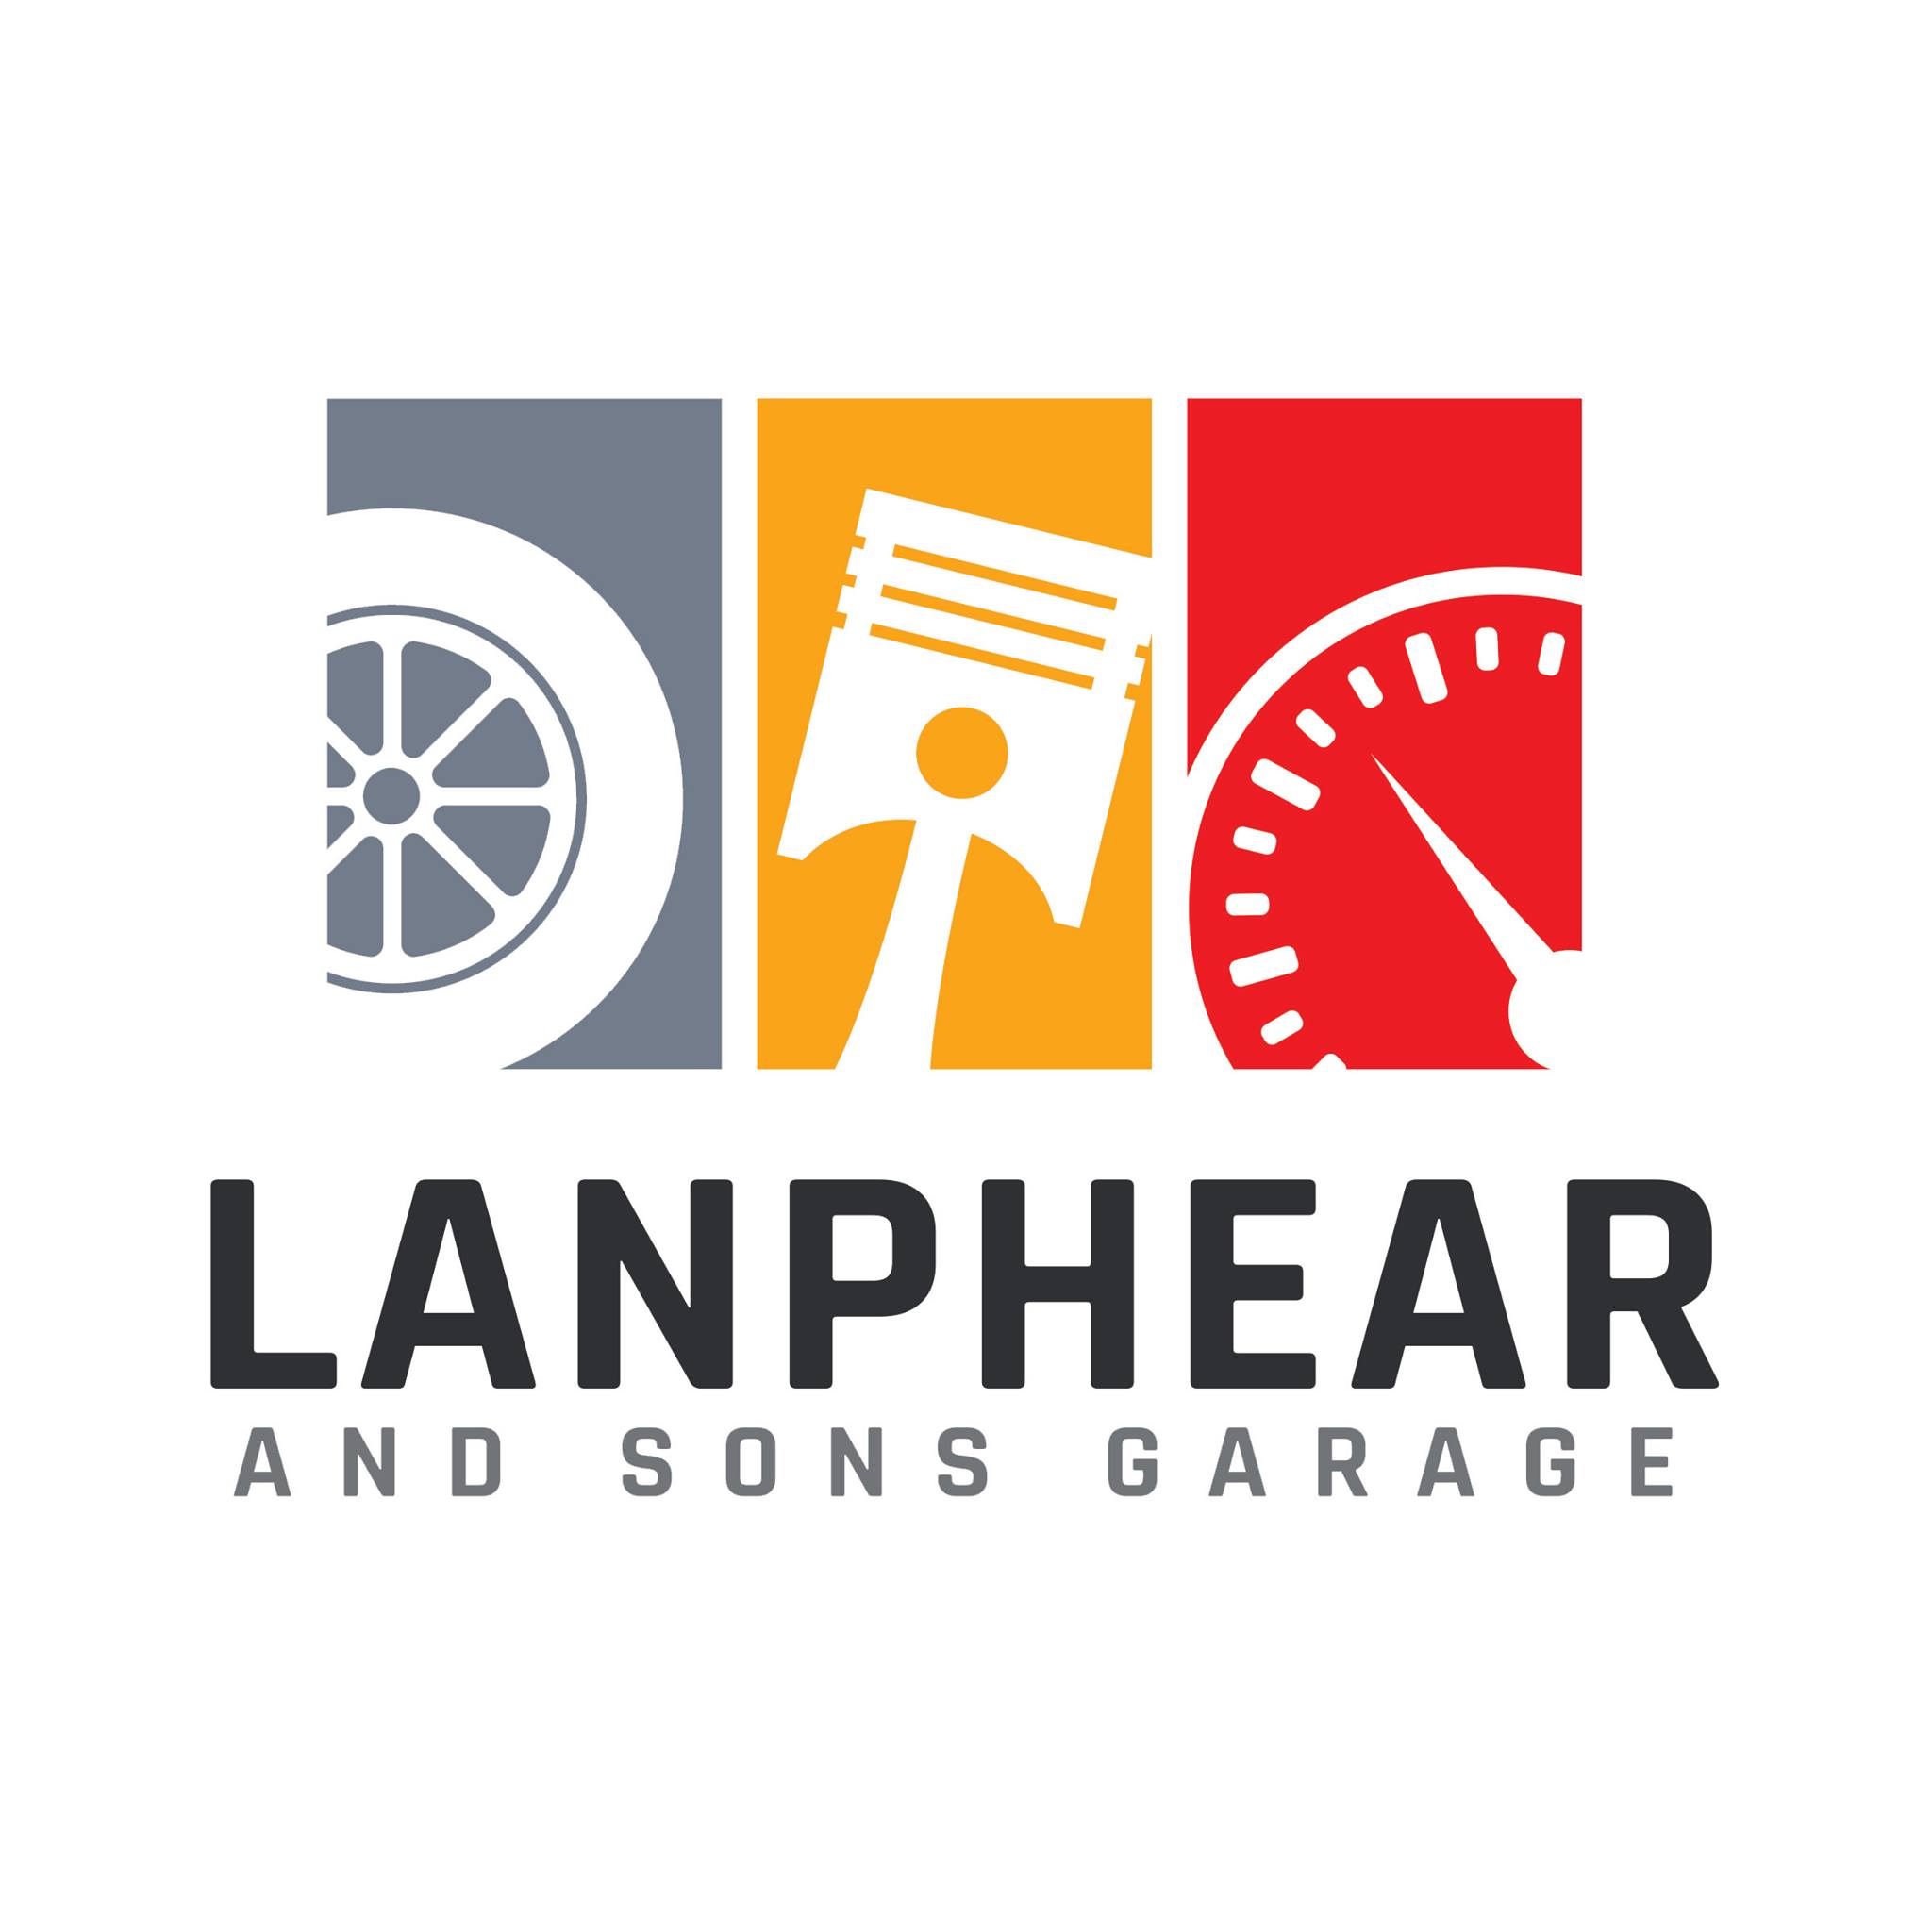 lanphear and sons garage.jpg